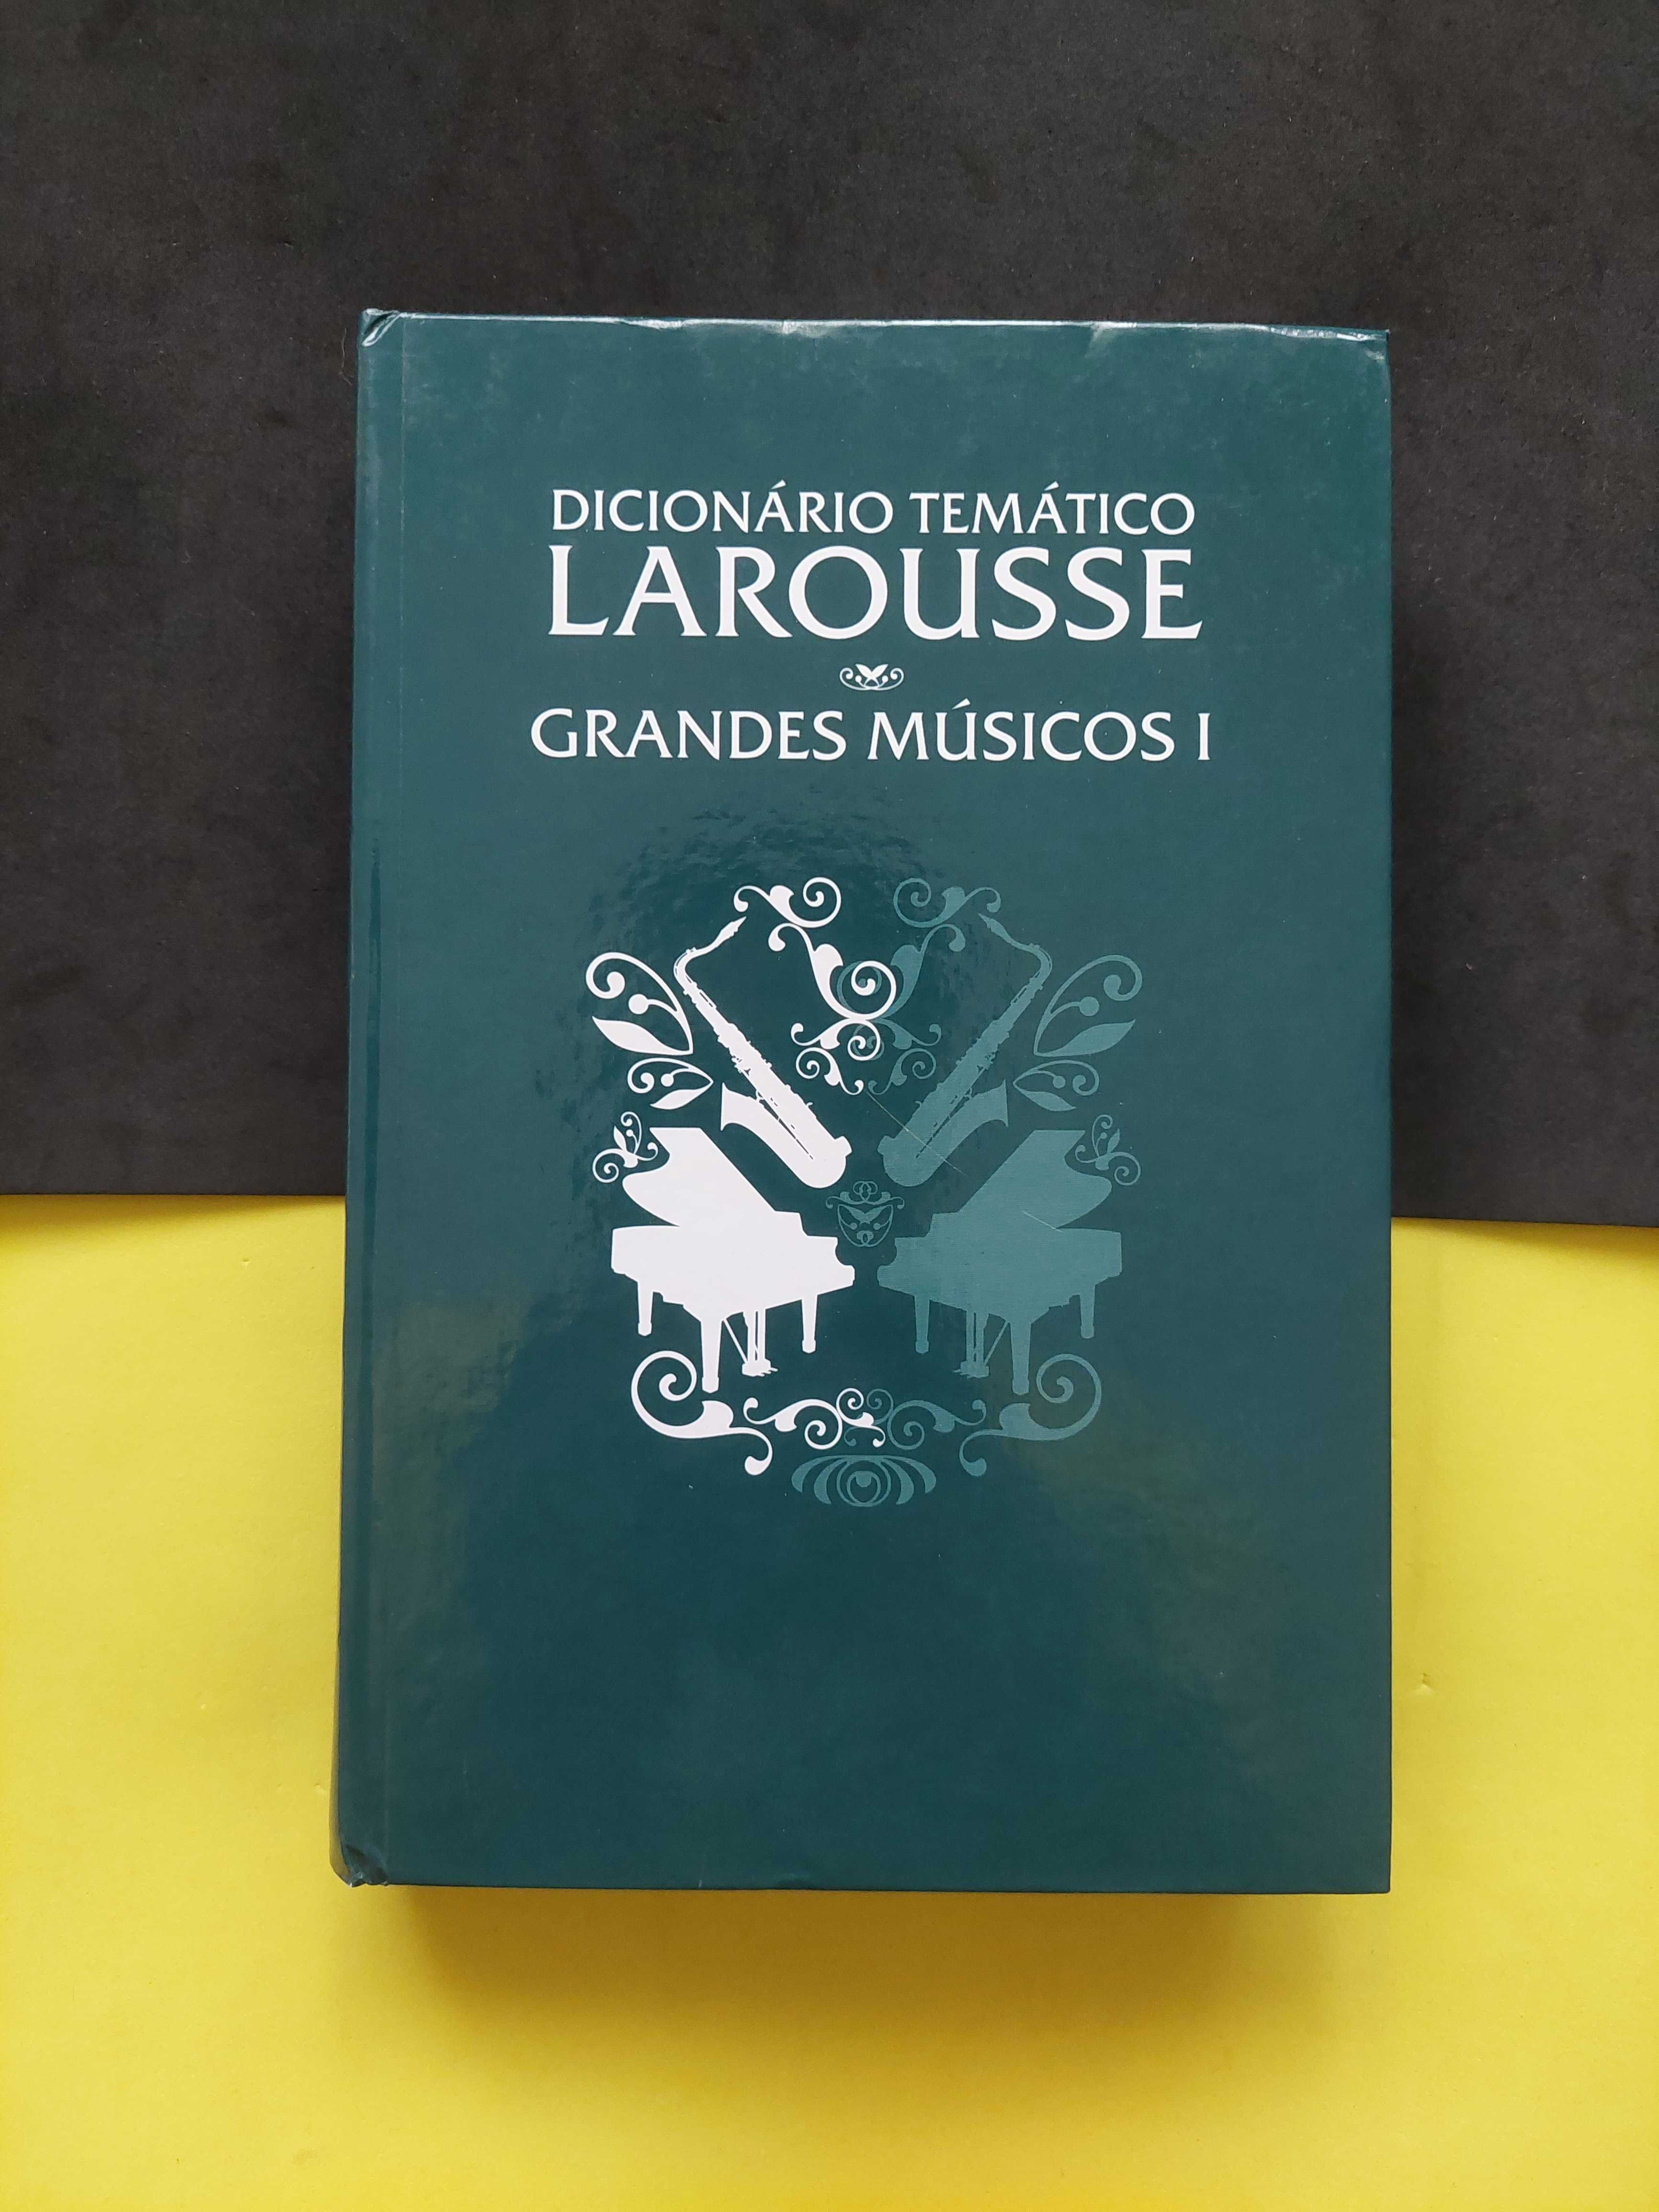 Dicionário Tematico Larousse Grandes Músicos I e II